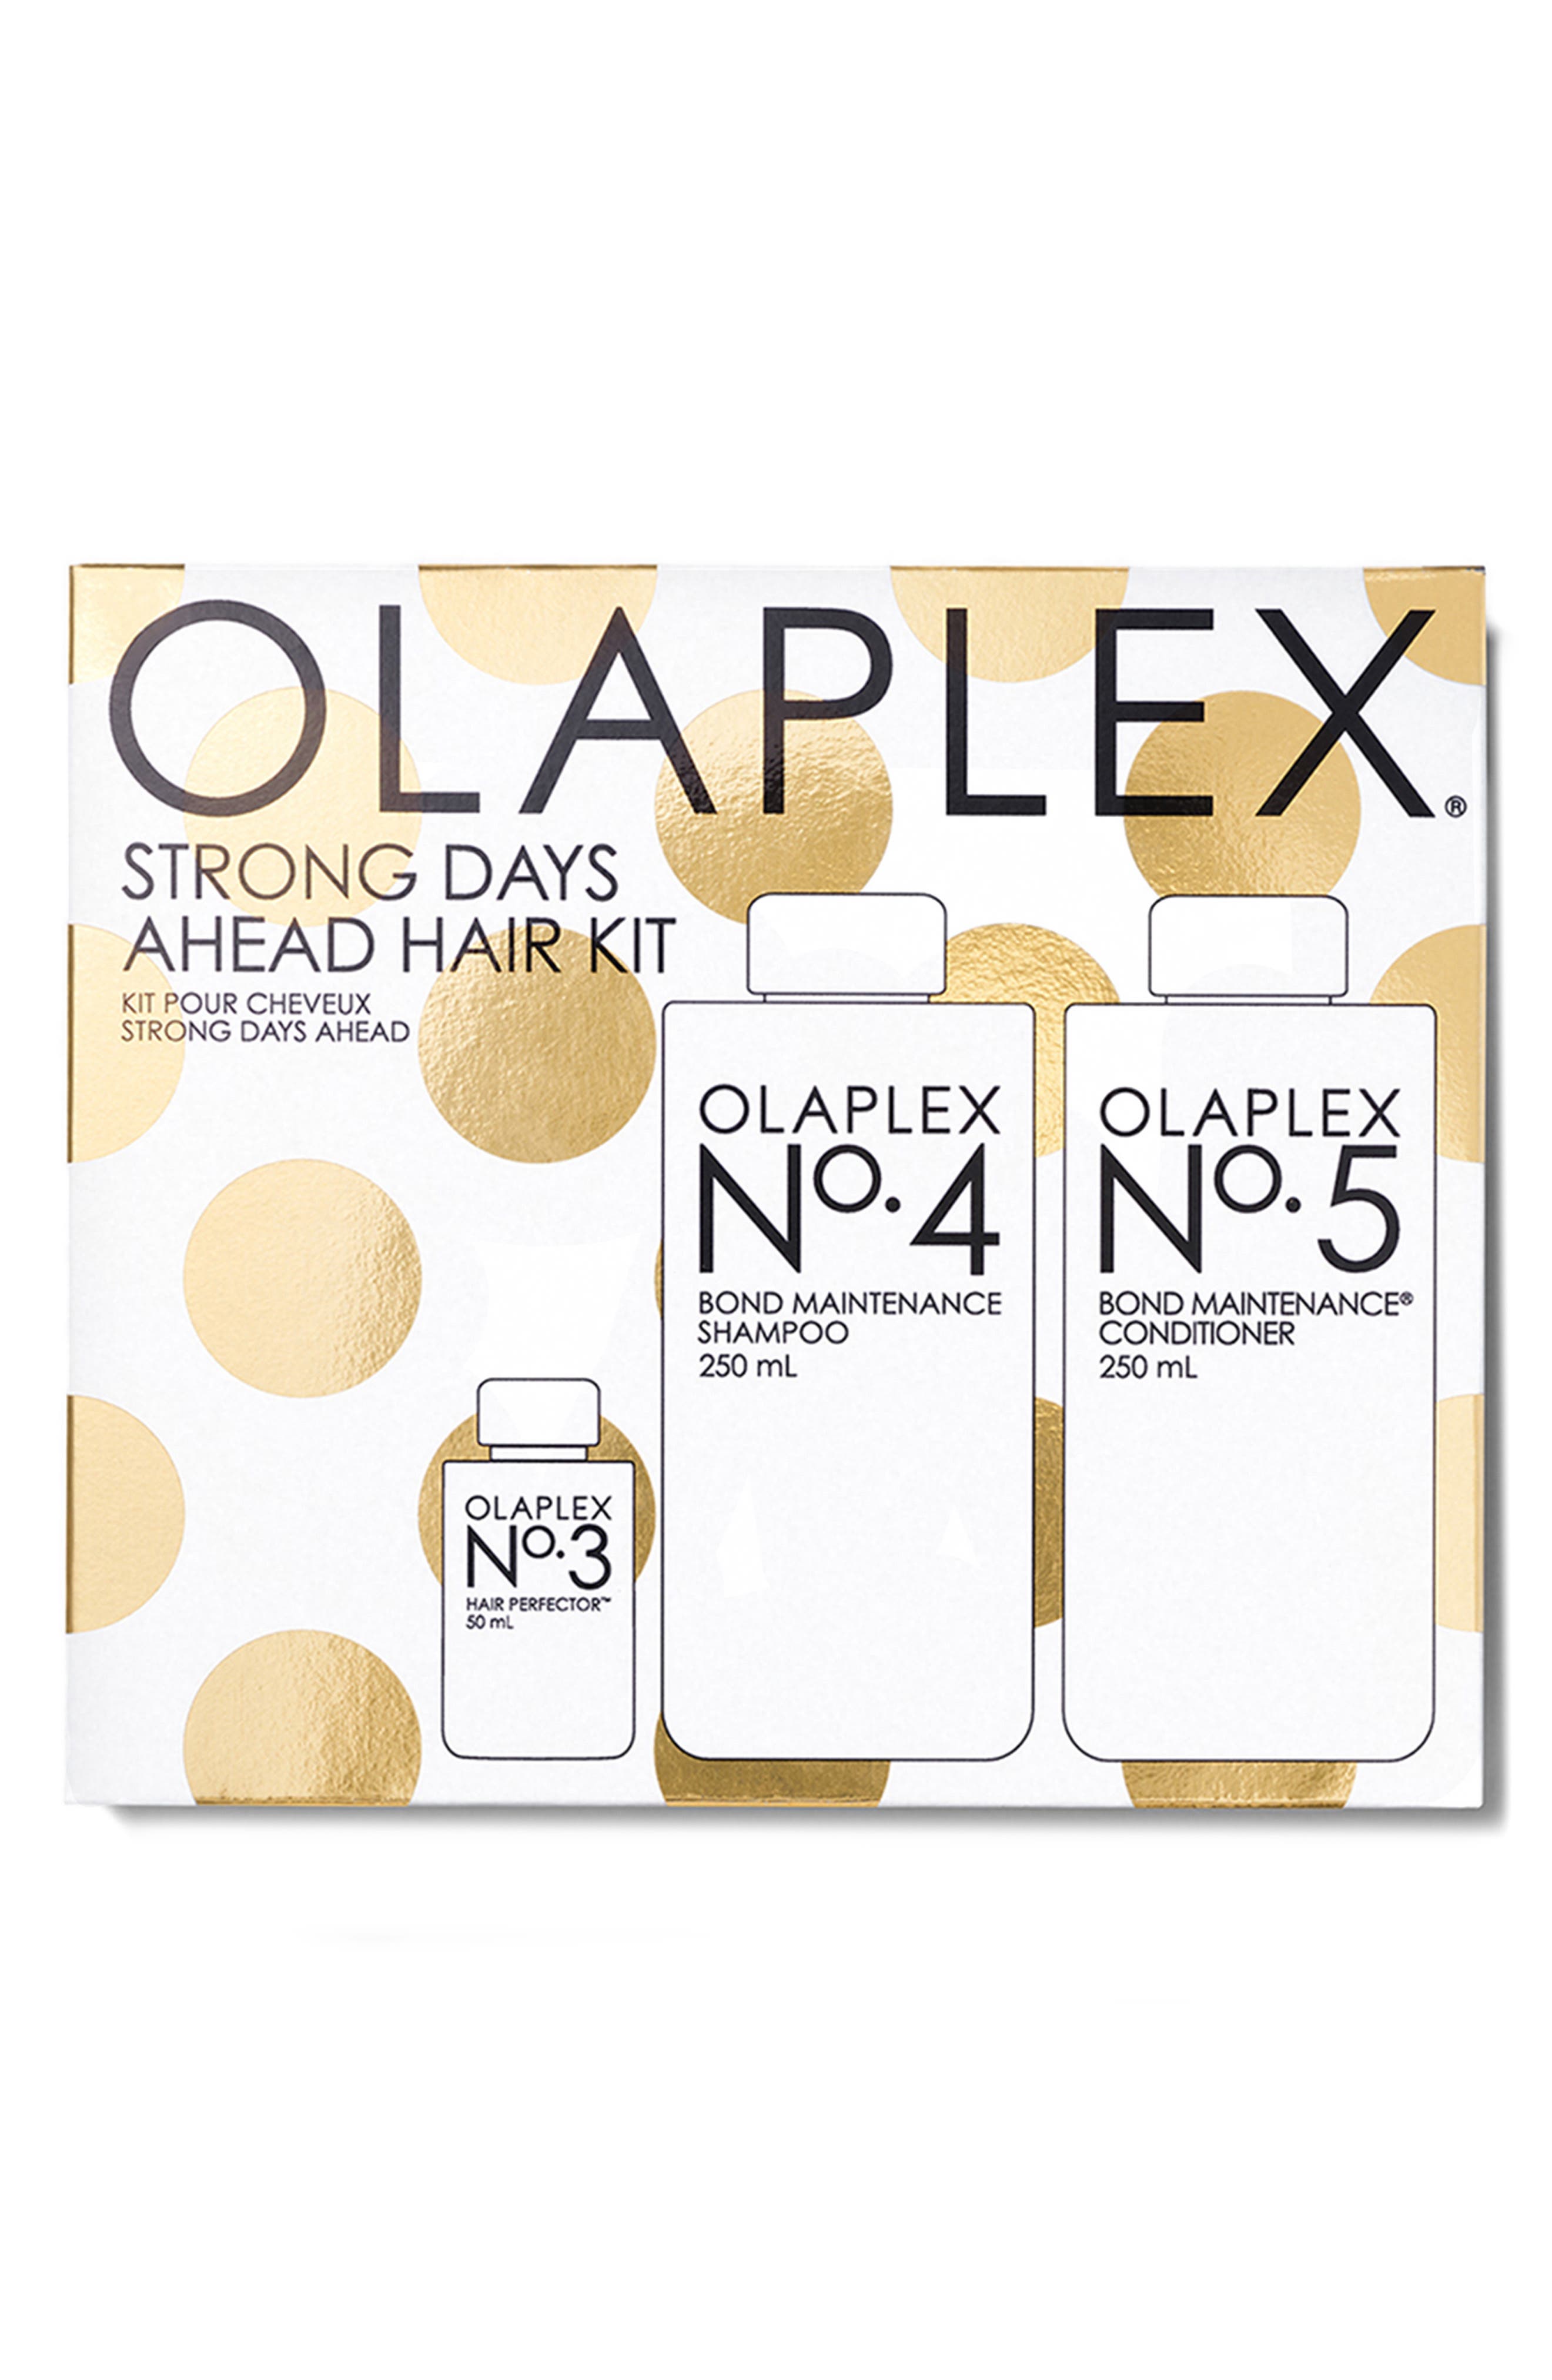 Olaplex Strong Days Ahead 3-Piece Hair Kit $90 Value